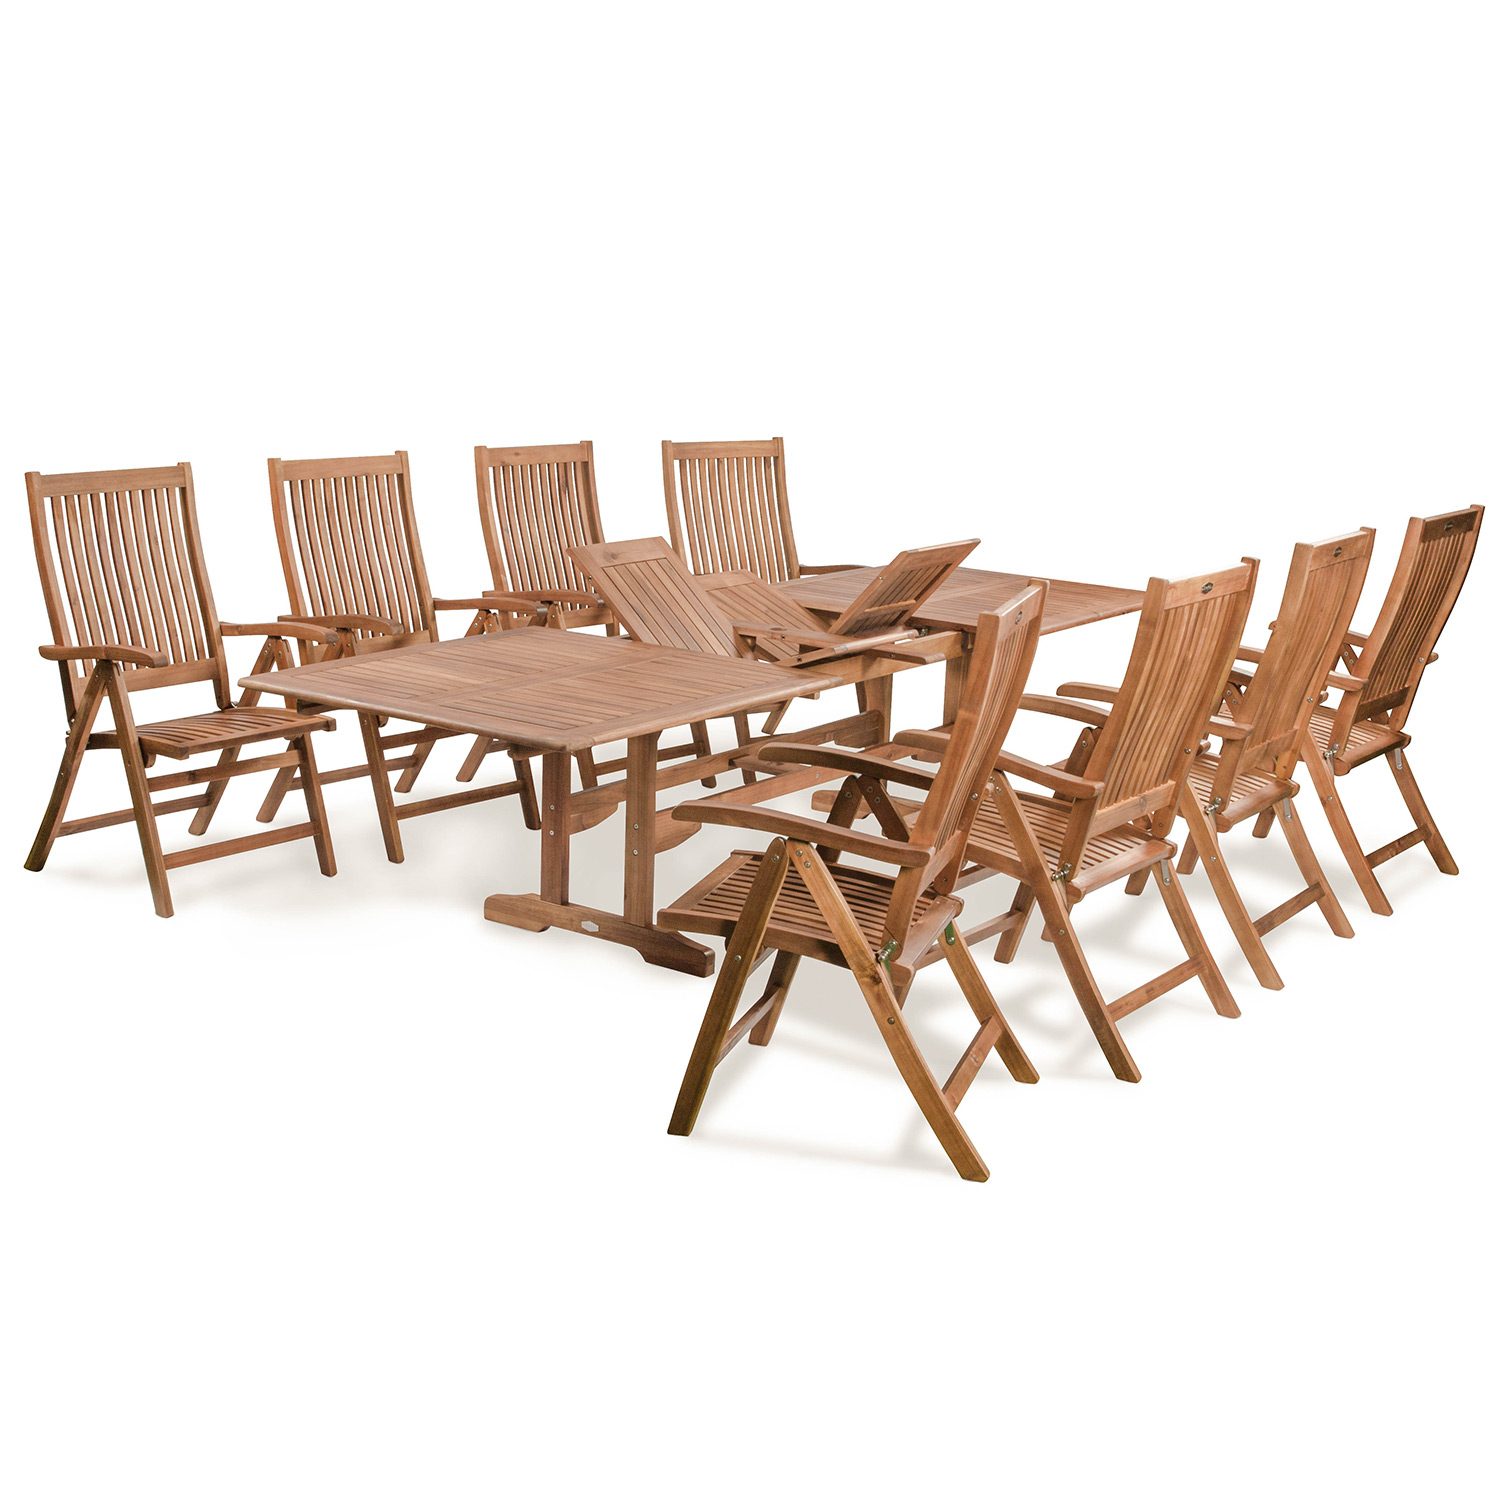 Everton matgrupp i hardwood med 8 stolar och 1 rektangulärt förlängningsbart bord.